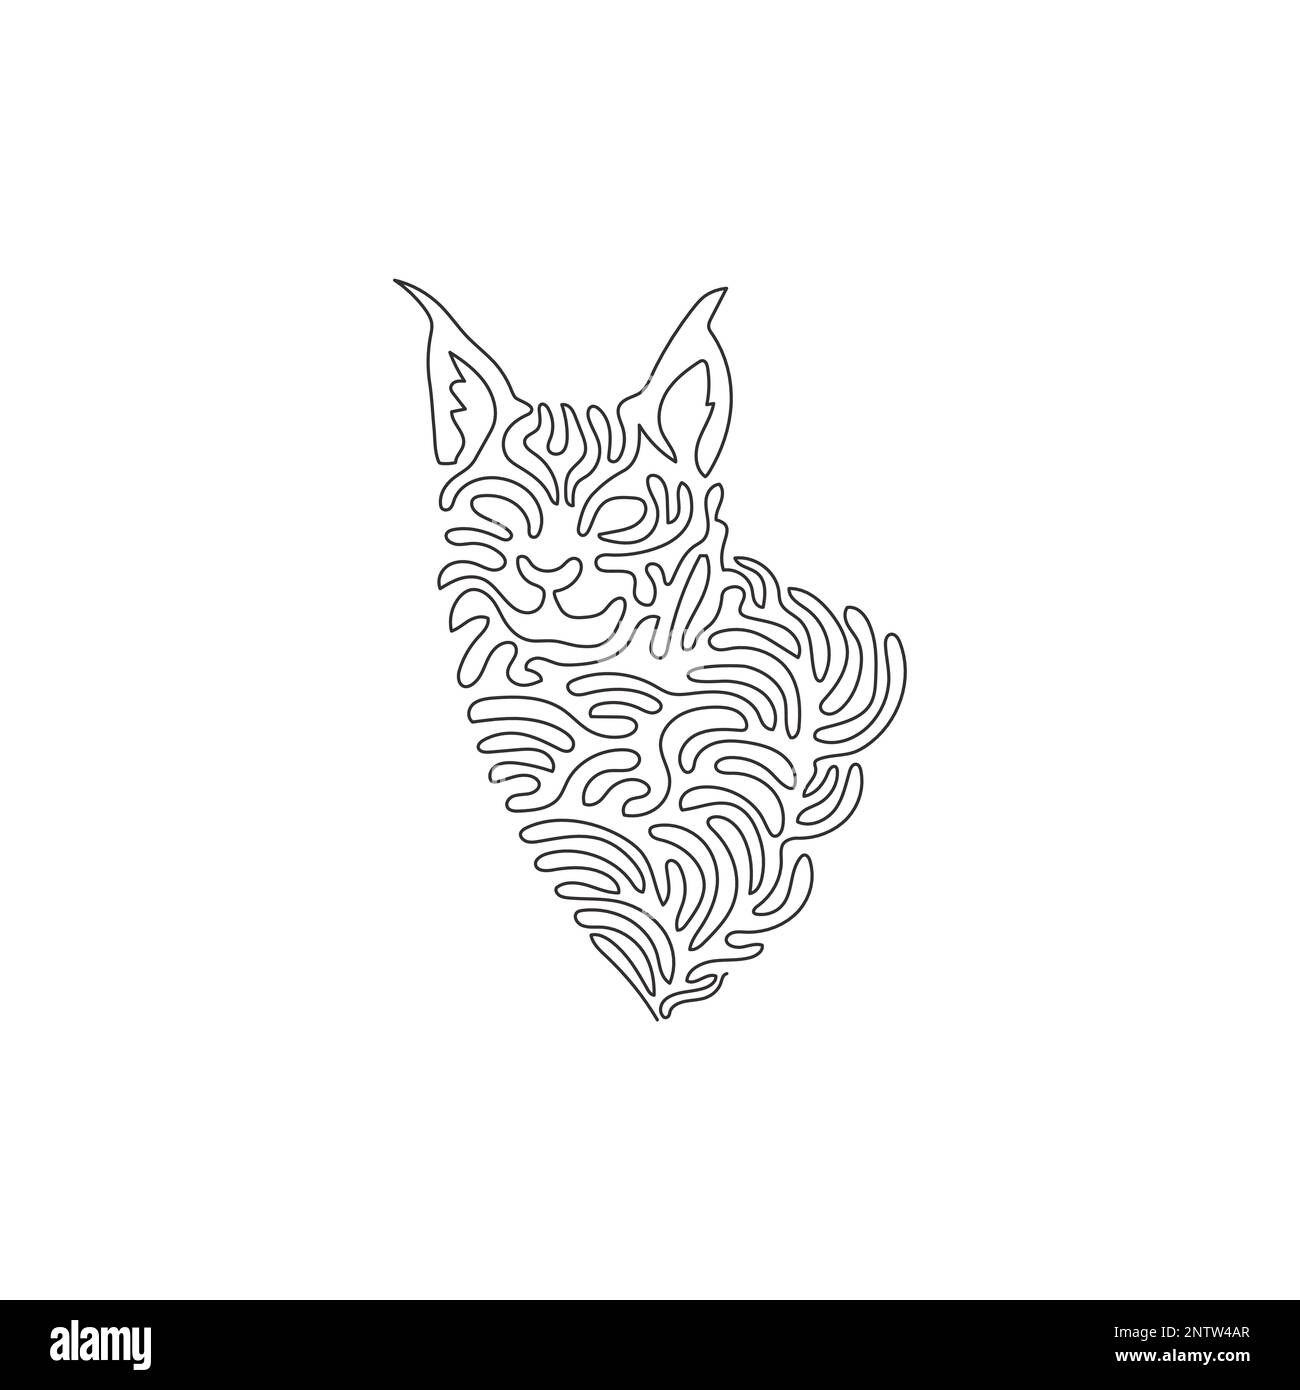 Un seul dessin d'une ligne de belle lynx art abstrait Ligne continue dessin graphique dessin vectoriel illustration de tufts caractéristiques de cheveux noirs Illustration de Vecteur